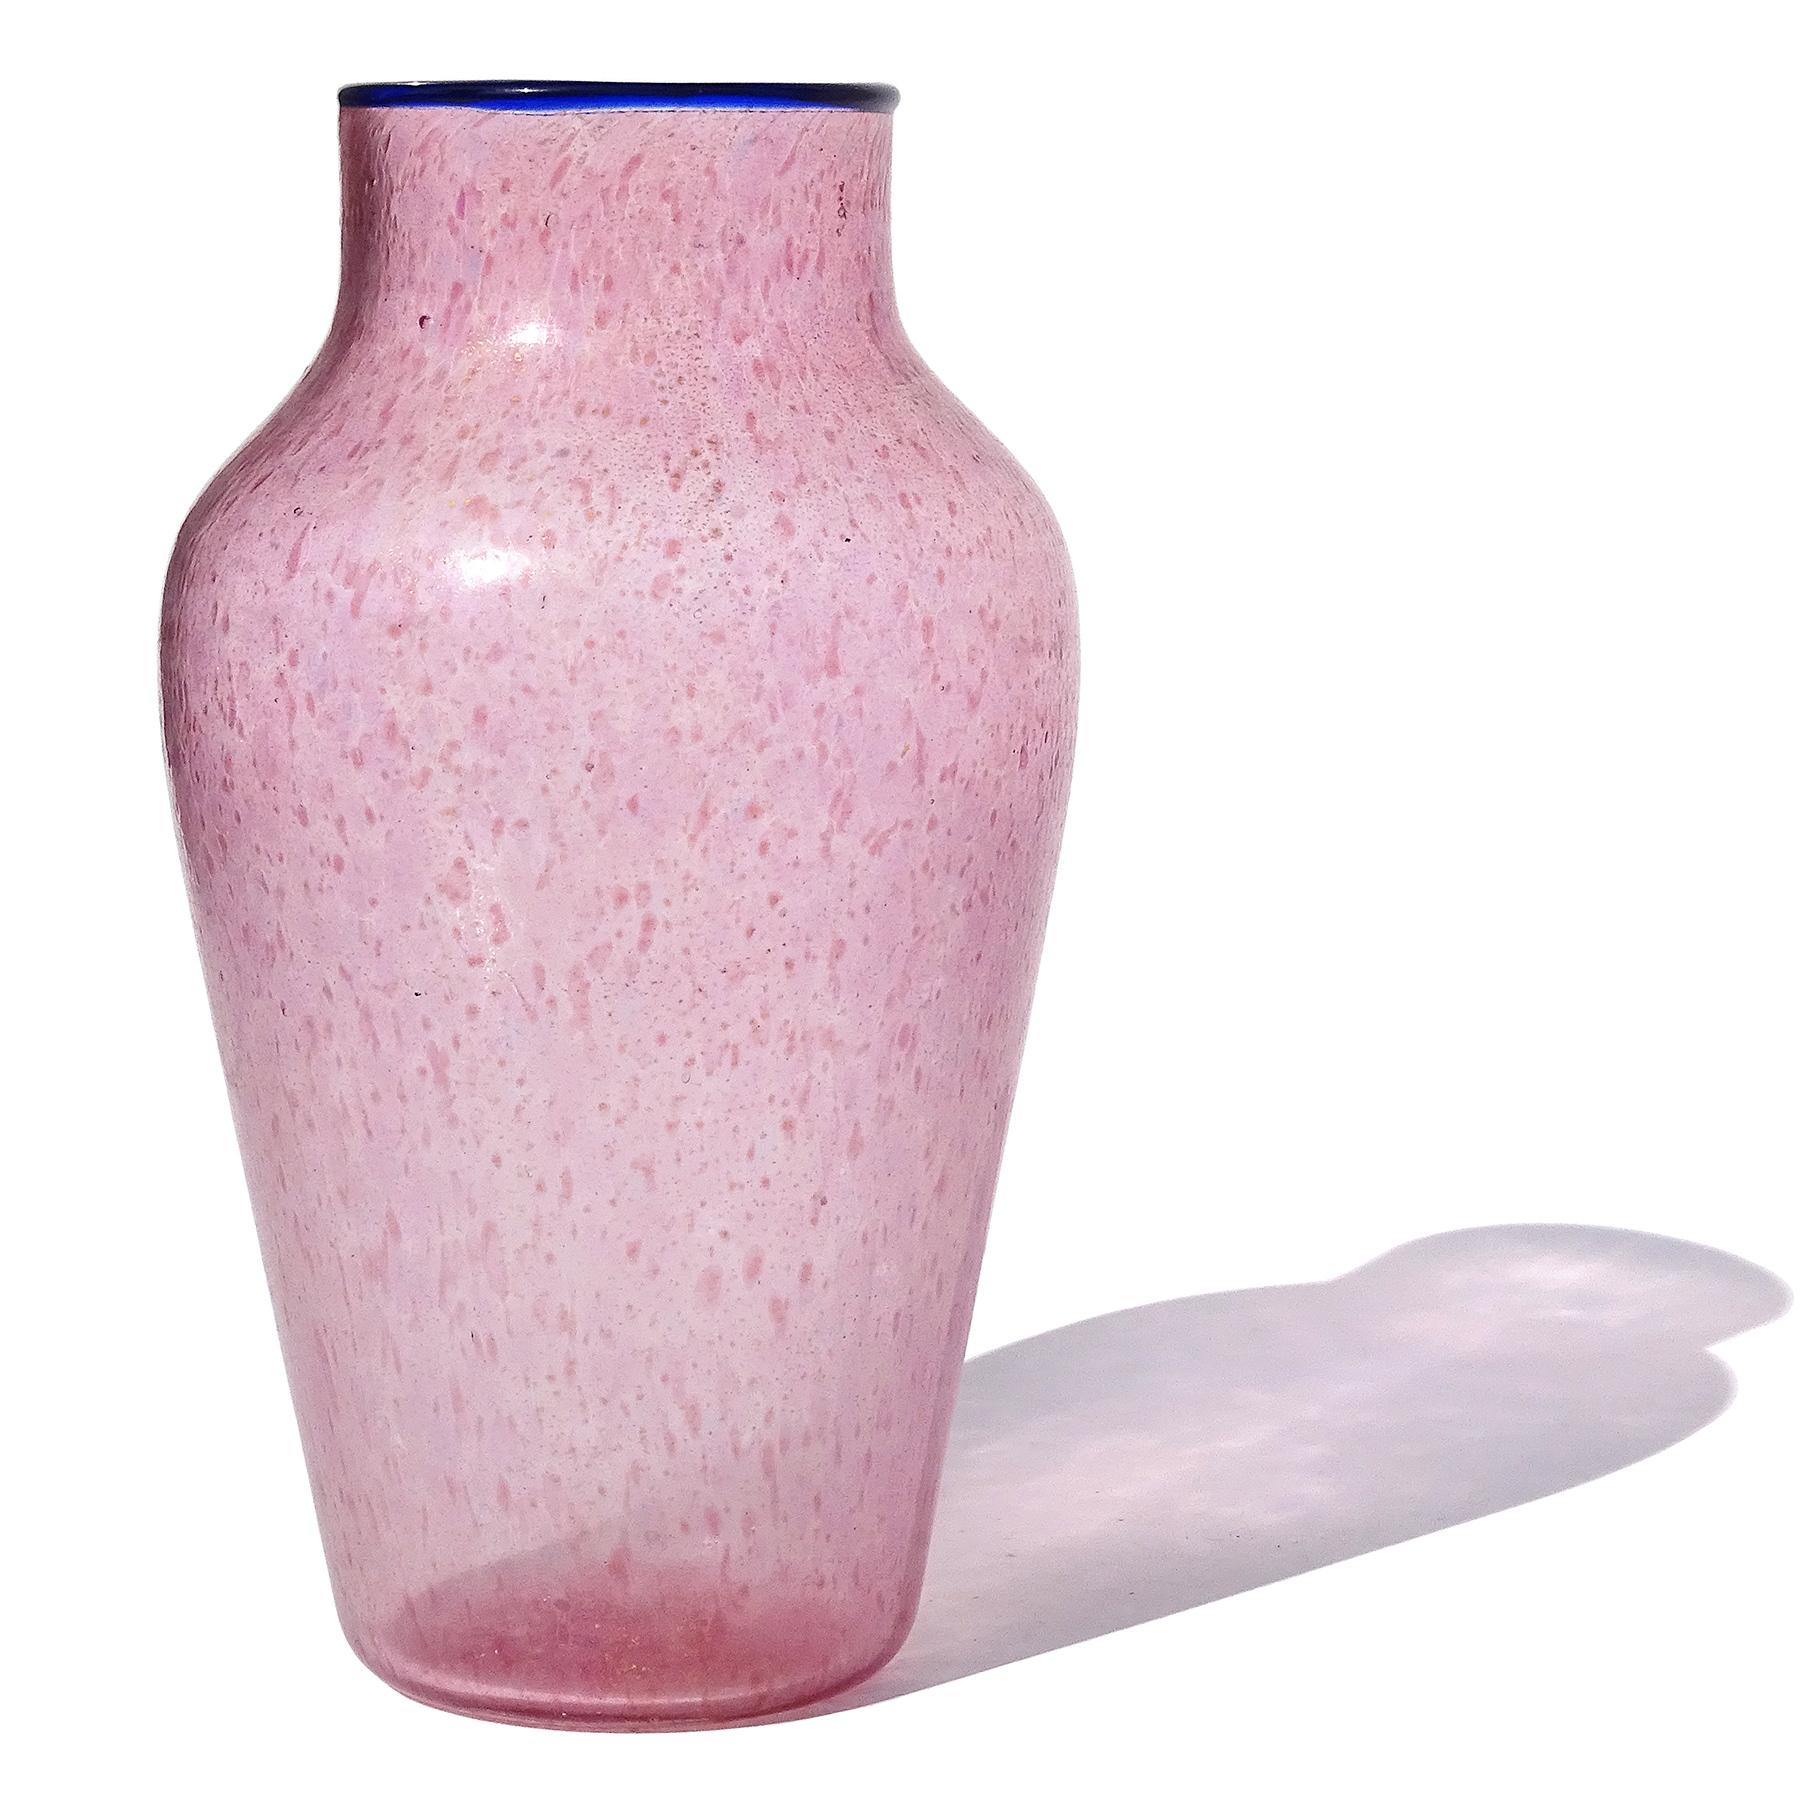 Schöne, antike, frühe venezianische / Murano mundgeblasenen rosa, blau und Goldflecken italienischen Kunstglas Blumenvase. Nach dem Vorbild der Unternehmen Salviati und Fratelli Toso geschaffen. Das Stück hat eine Menge kleiner rosafarbener und